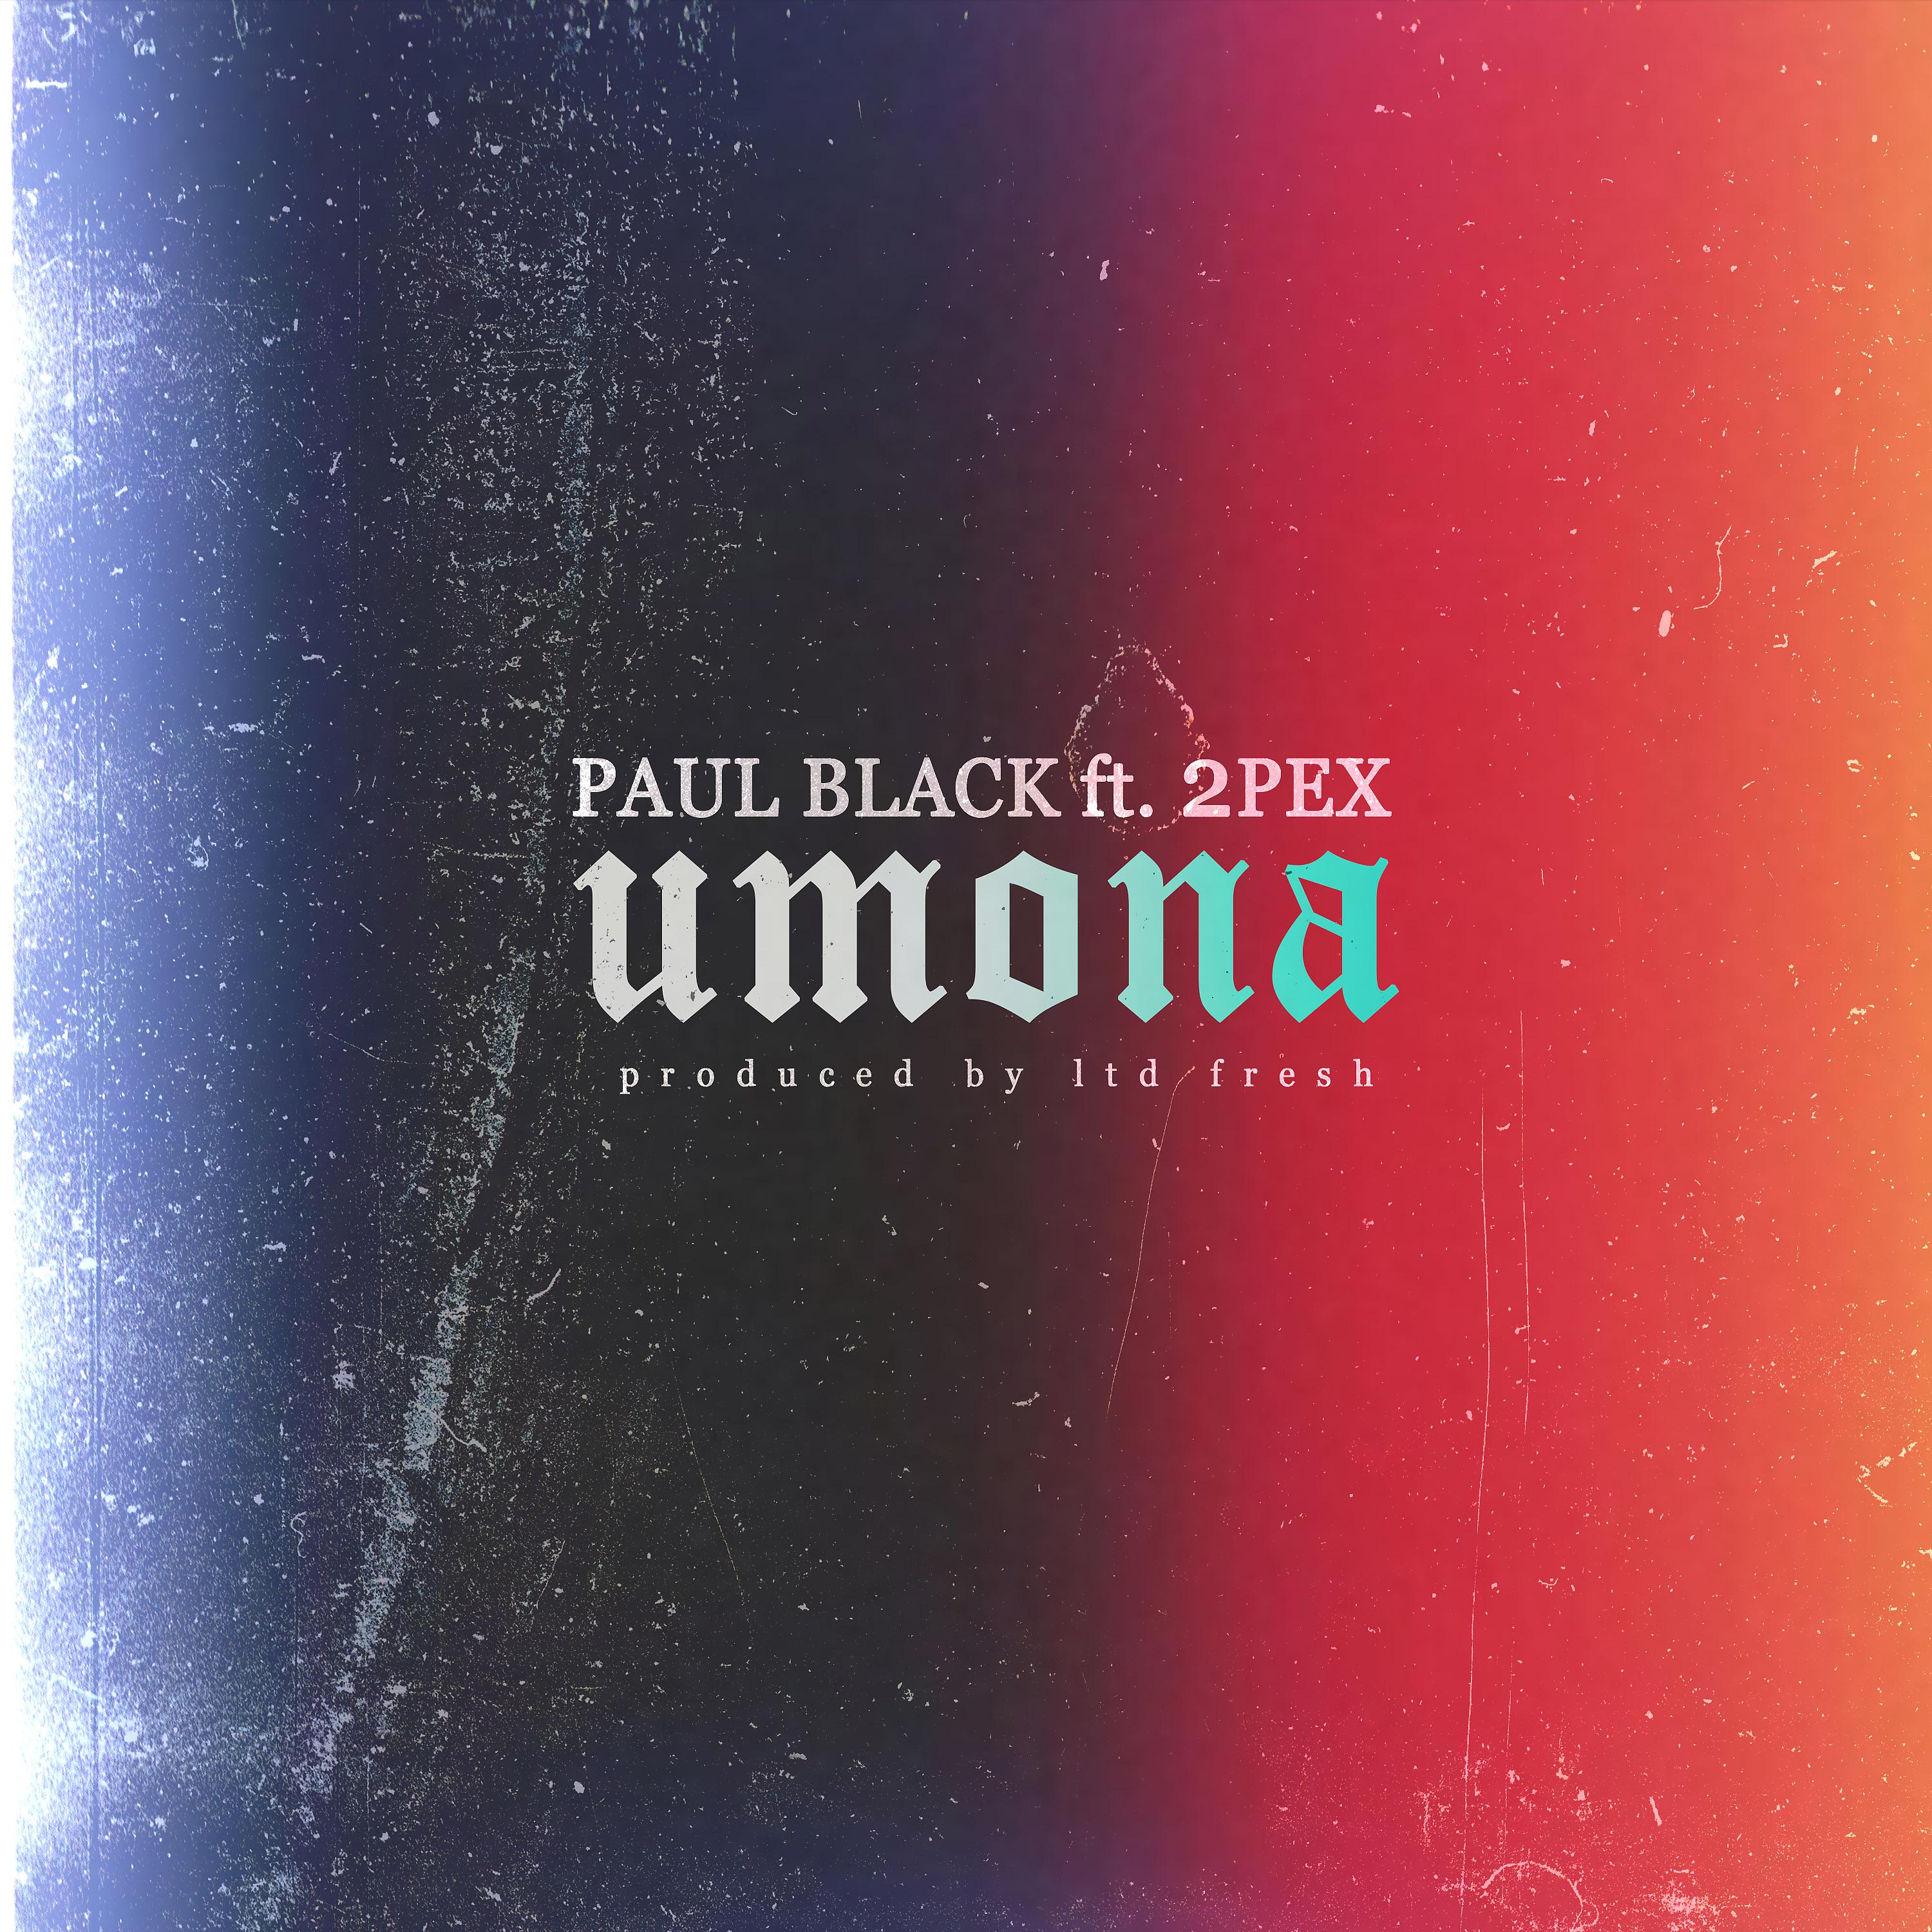 Постер альбома Umona